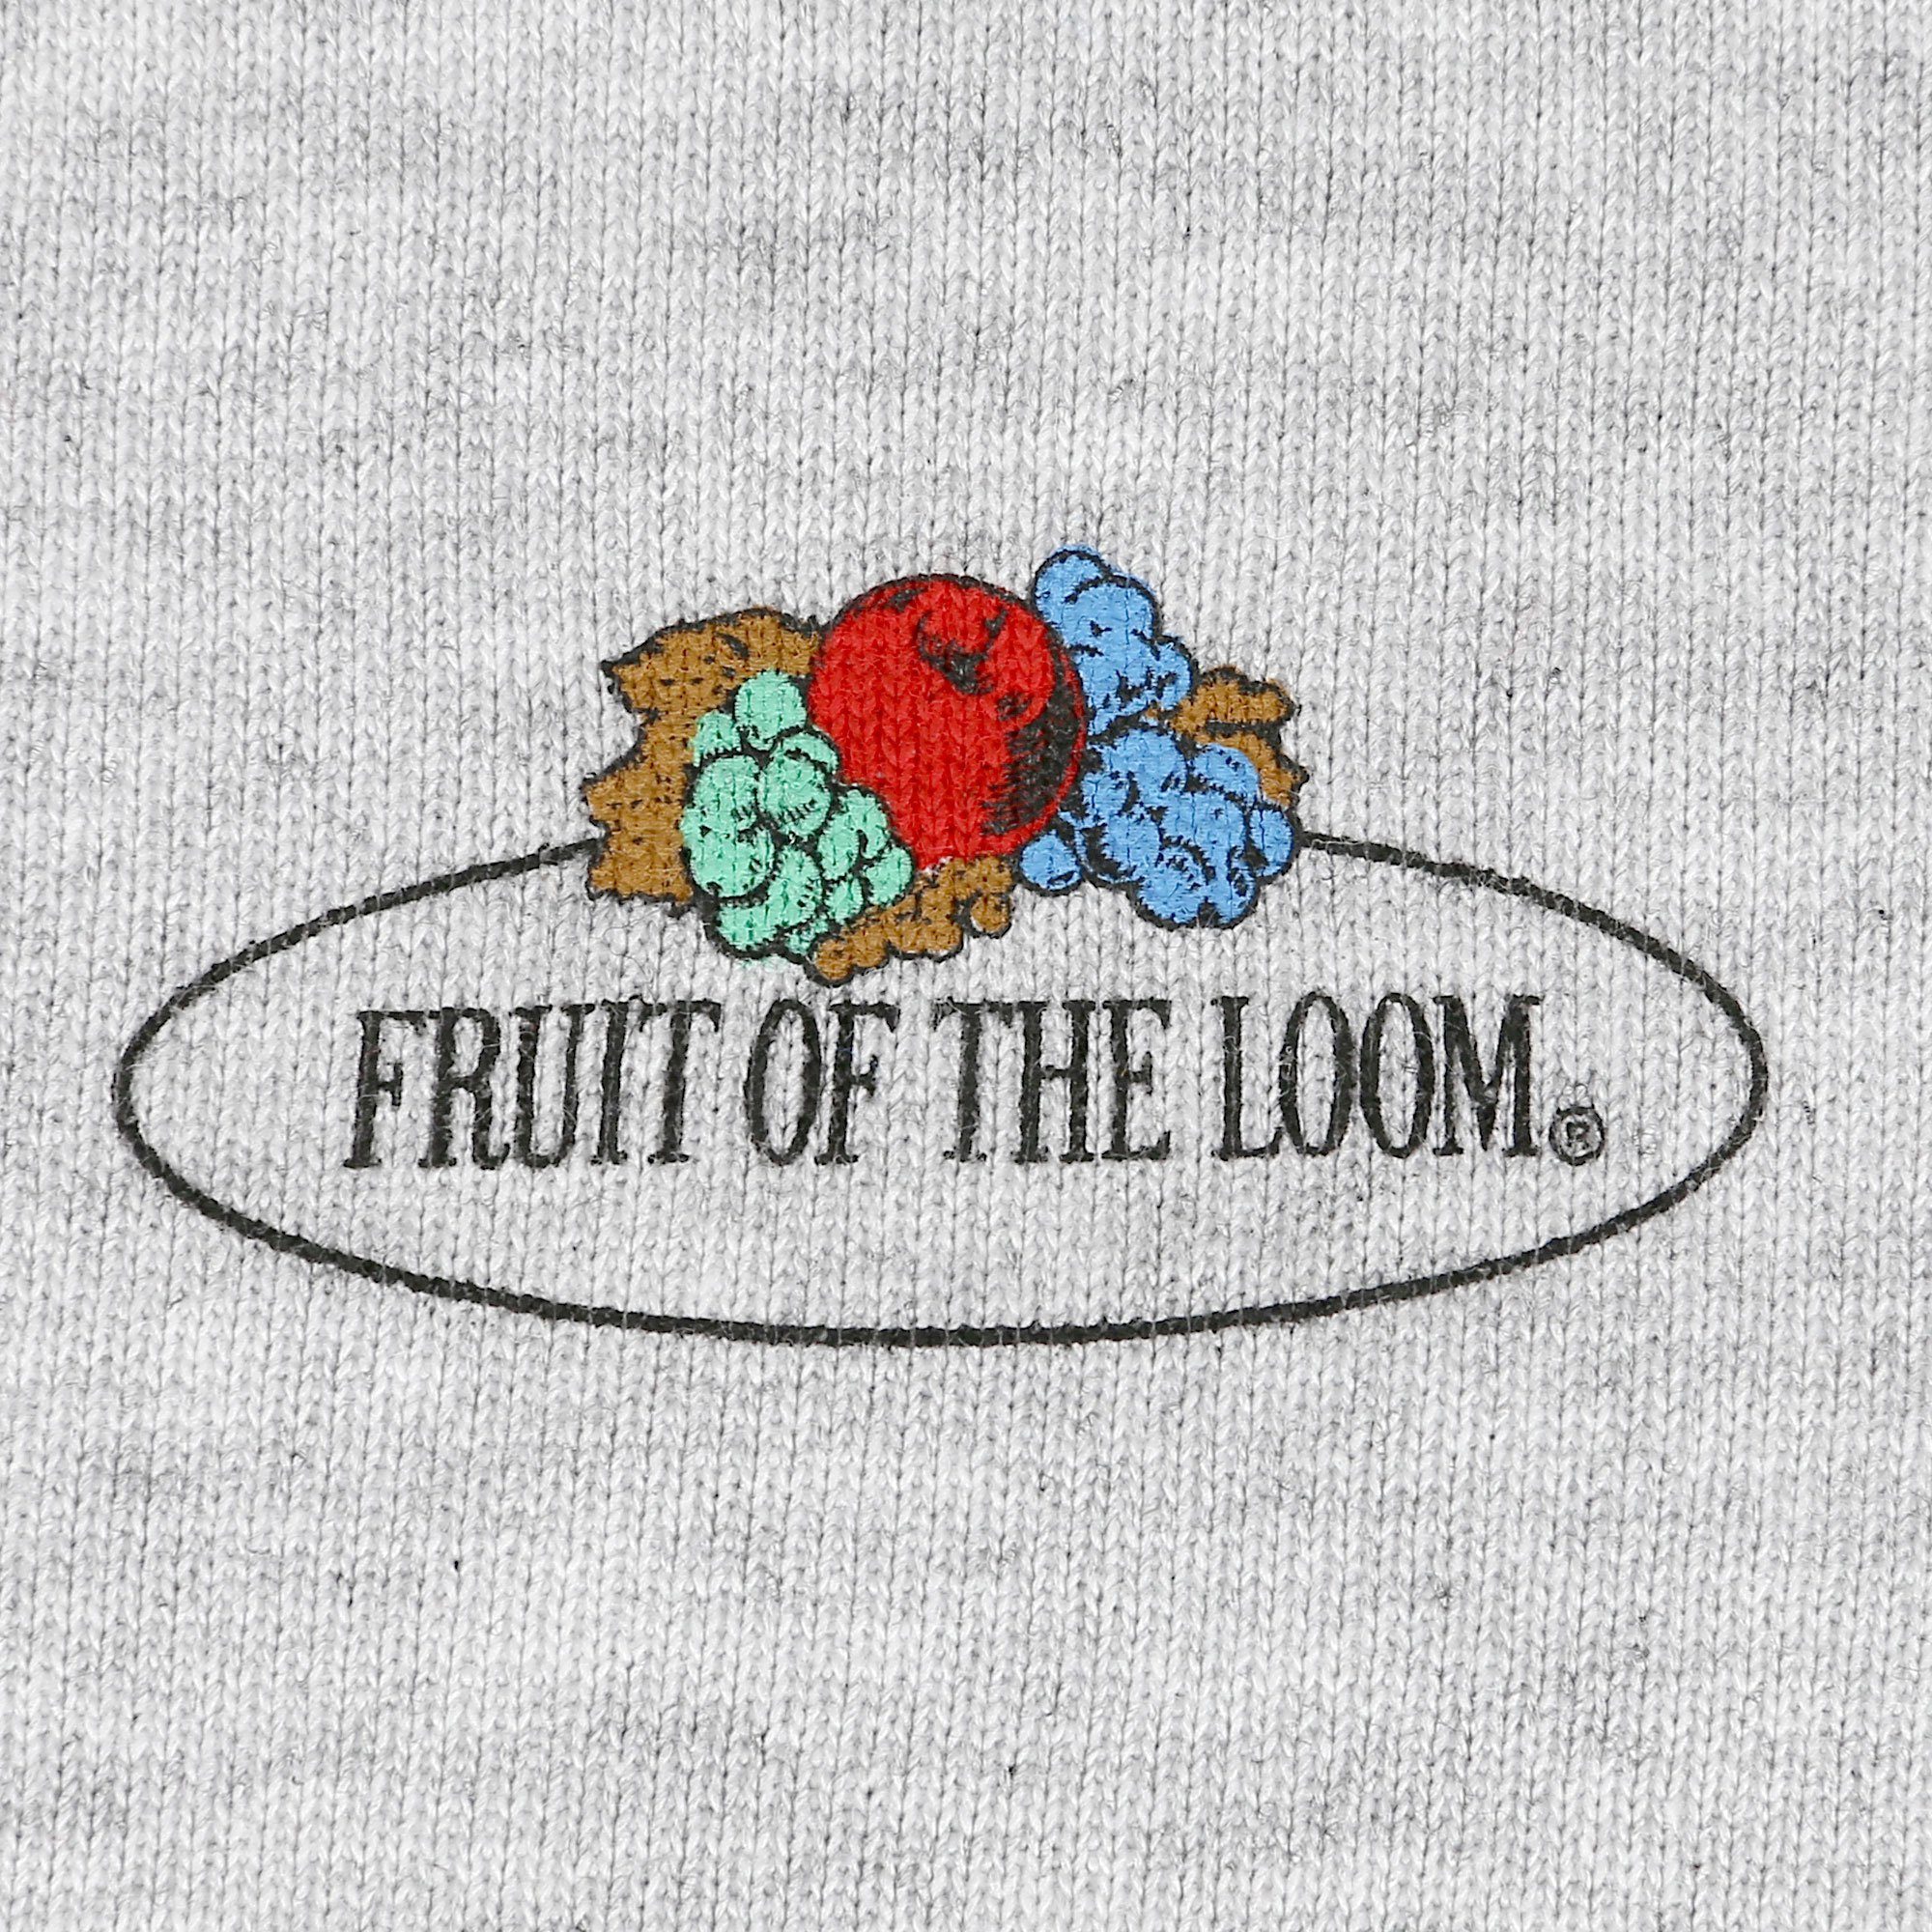 Vintage-Logo Sweatshirt mit Sweatshirt of Damen Loom the graumeliert leichtes Fruit